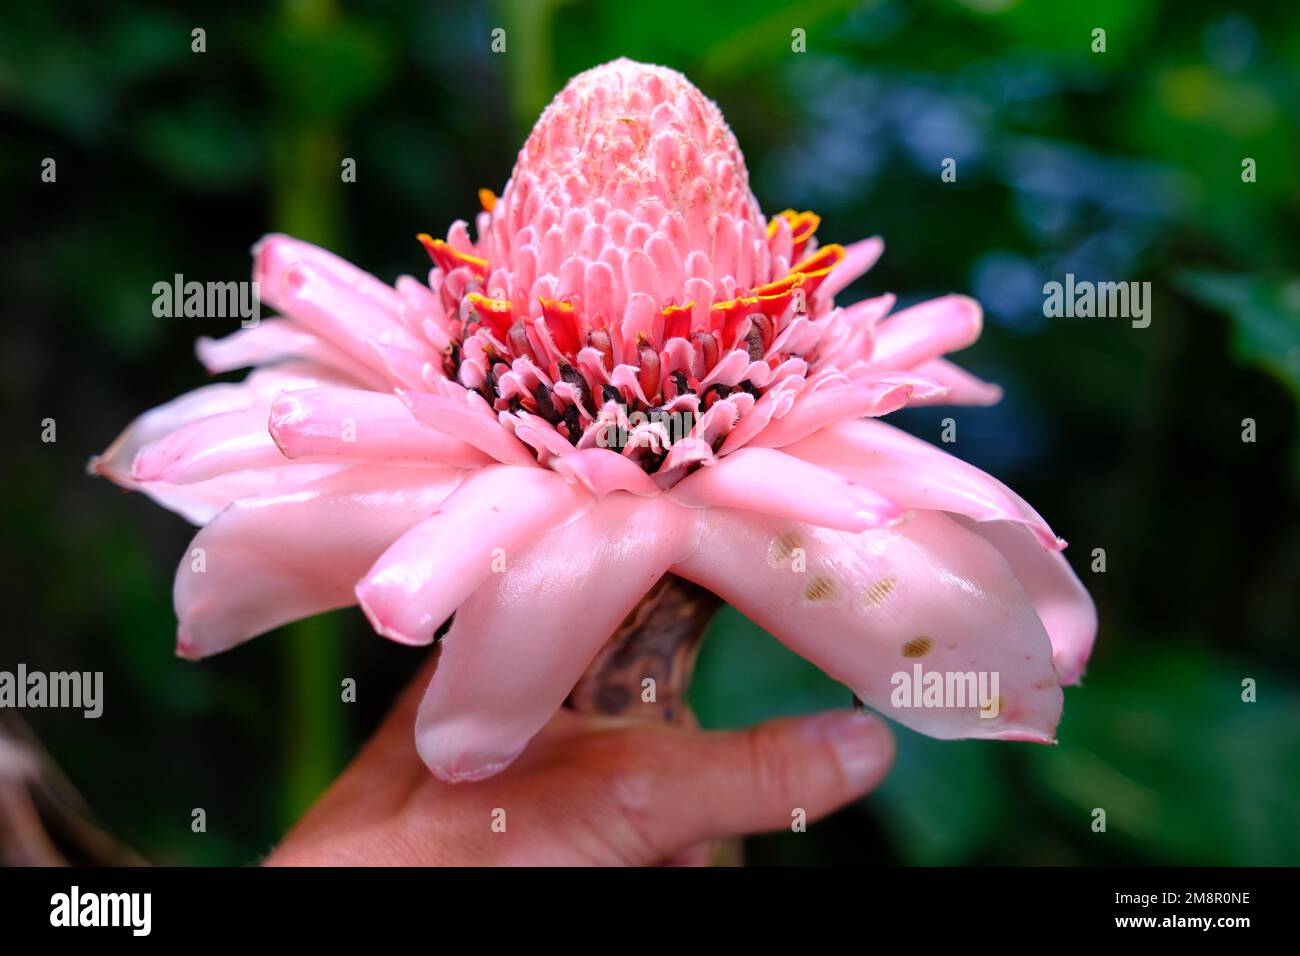 Indonesia Bali - Etlingera elatior - ginger flower - wild ginger Stock Photo